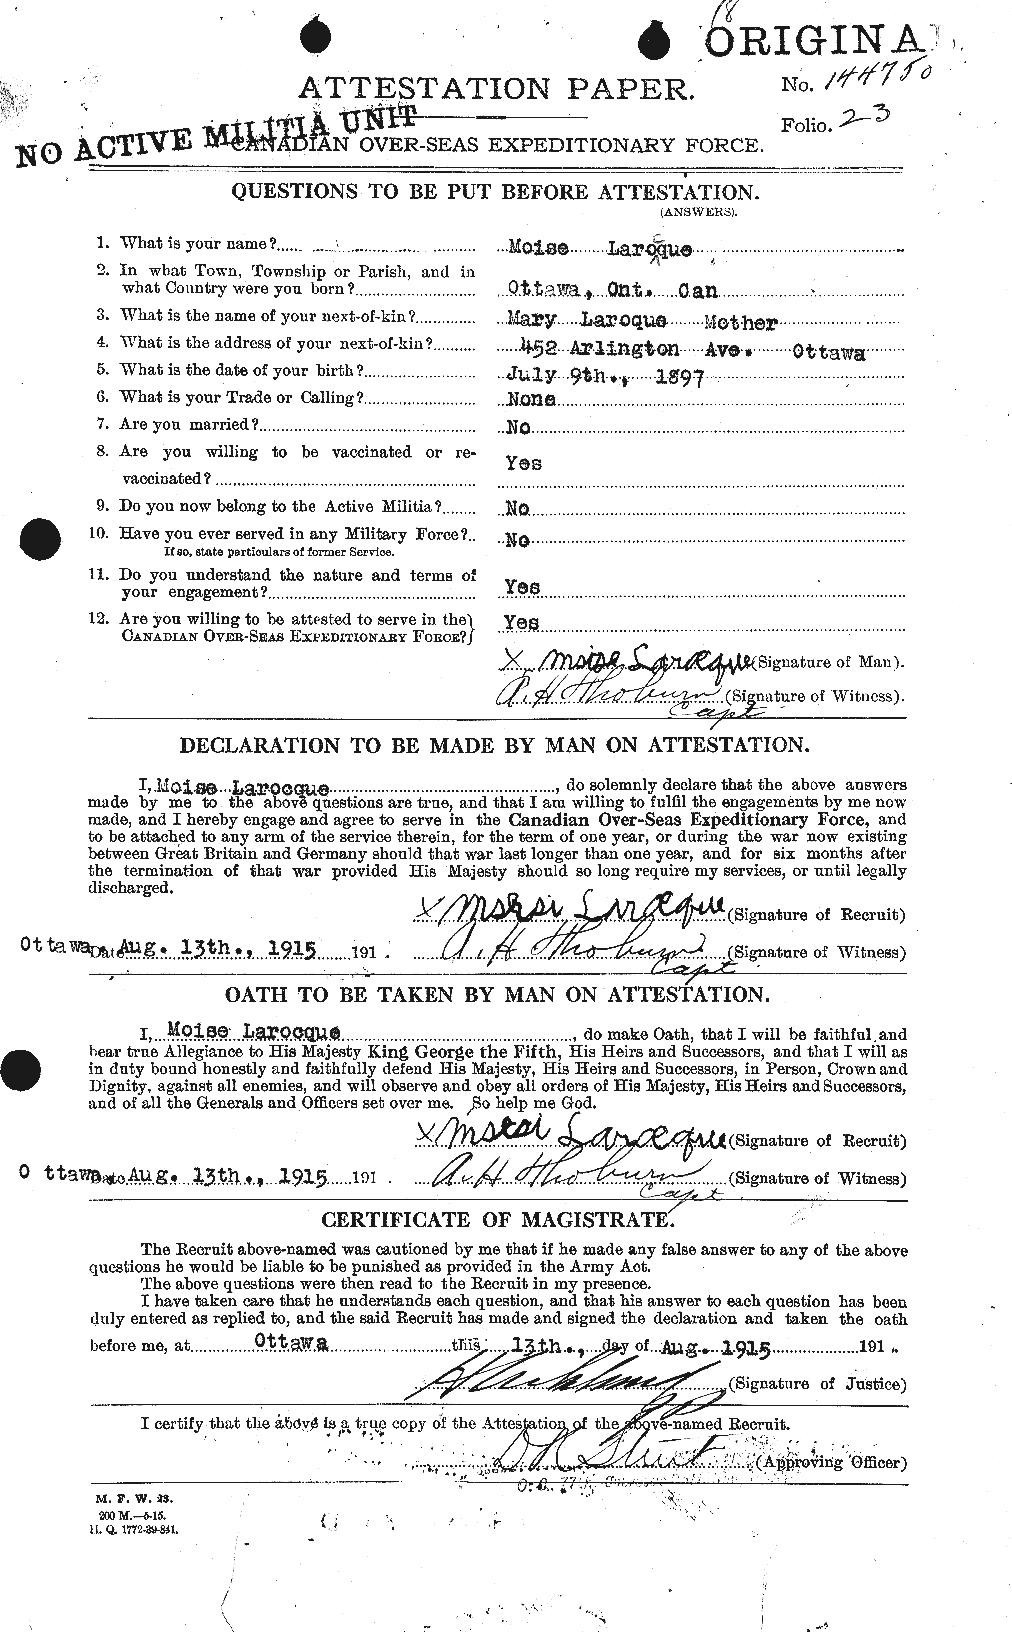 Dossiers du Personnel de la Première Guerre mondiale - CEC 450924a